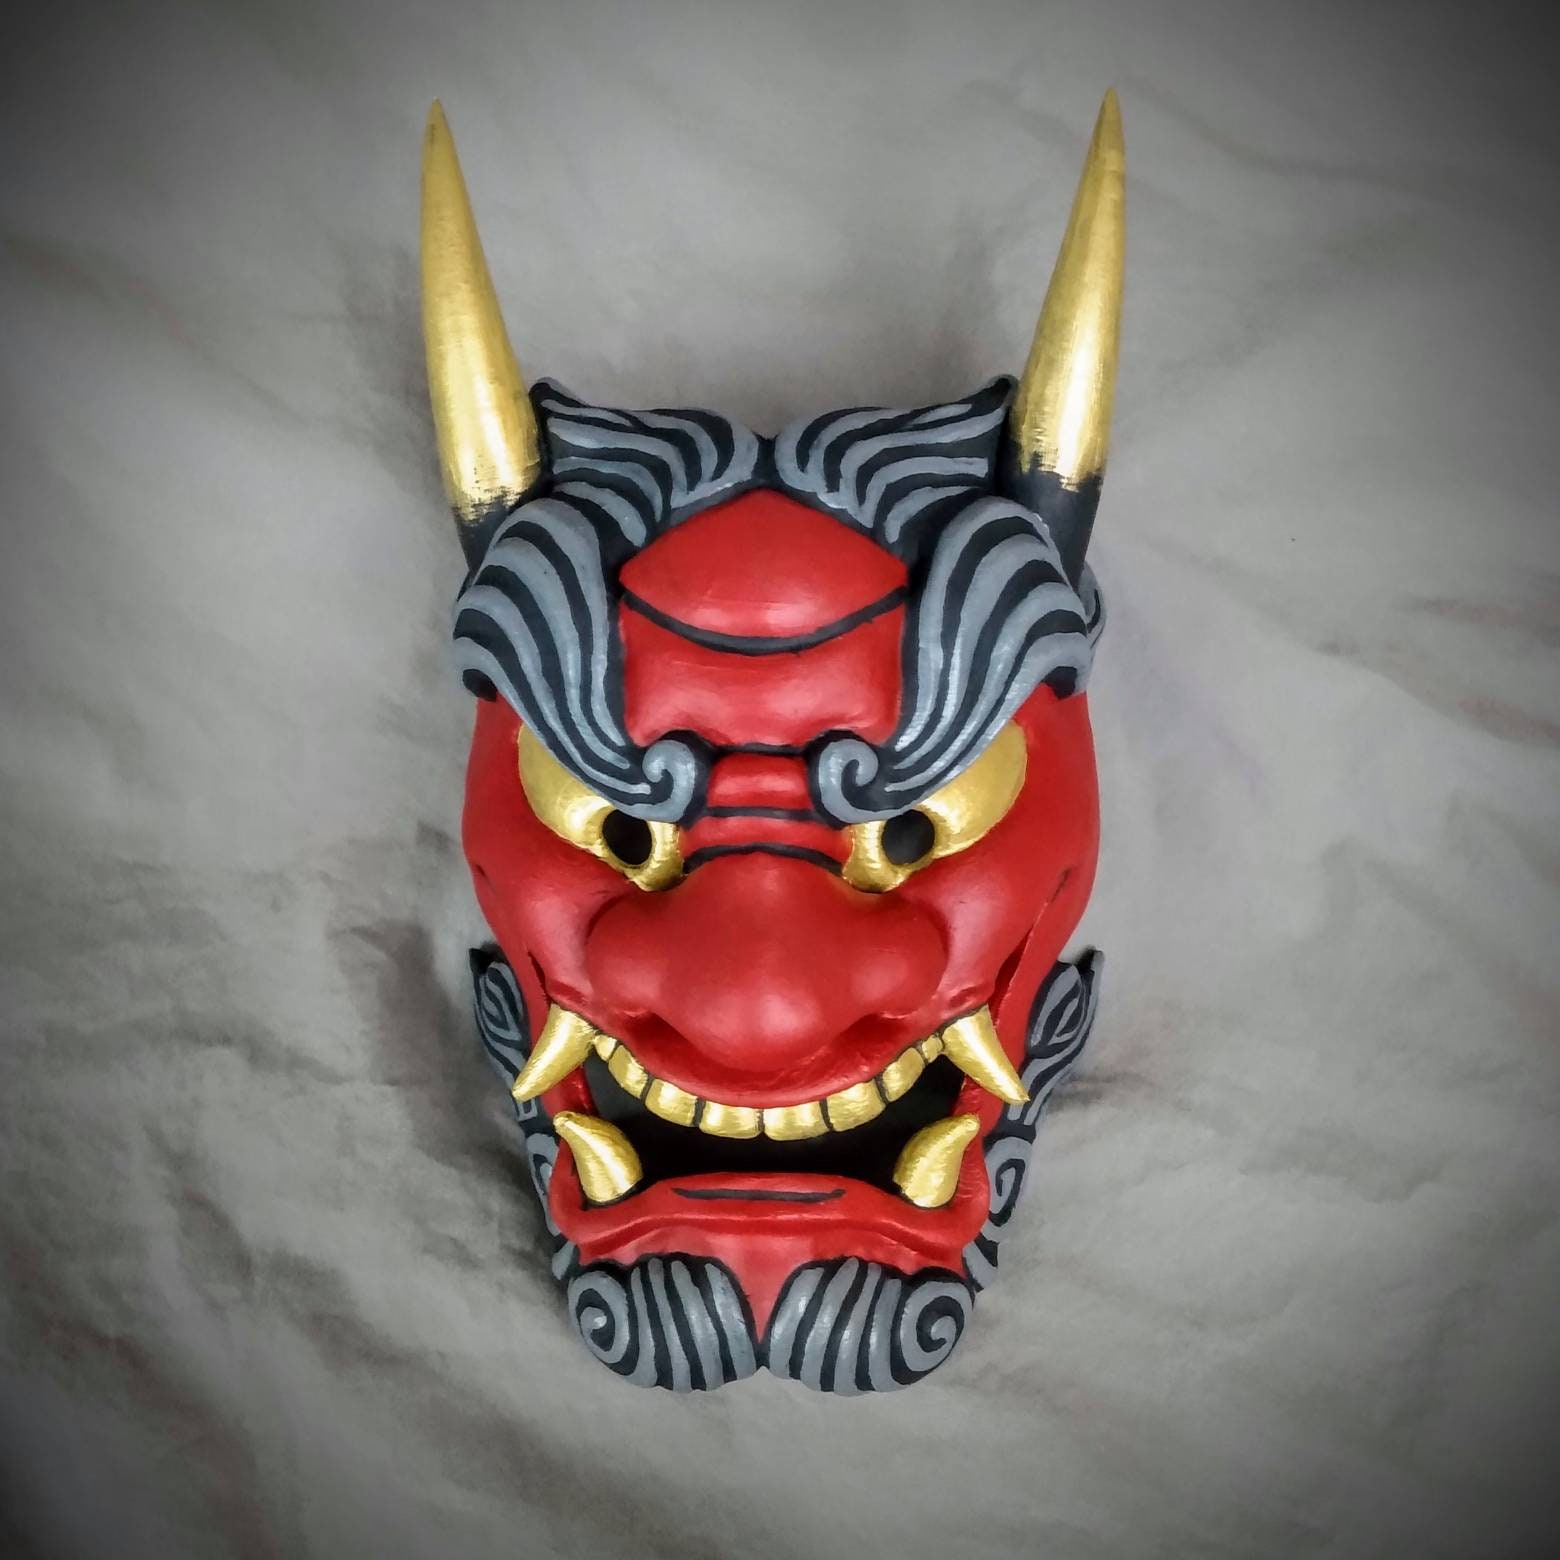 Traditional Mask / Bushido Mask / Japanese Theater Mask - Etsy